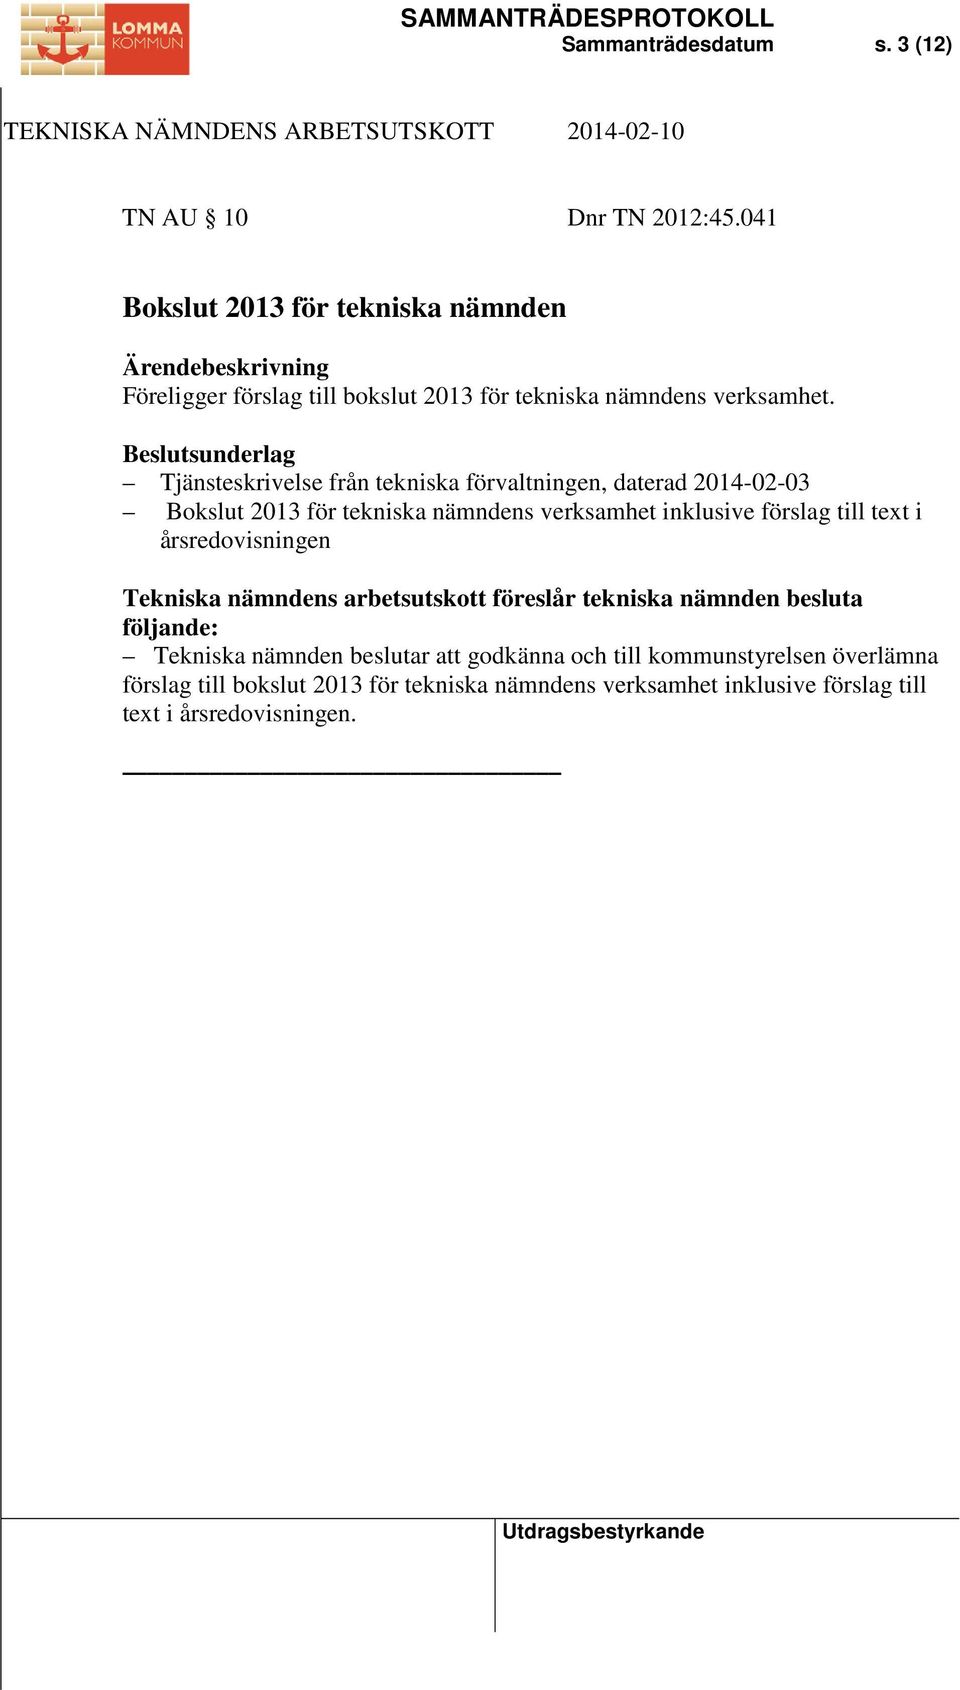 Tjänsteskrivelse från tekniska förvaltningen, daterad 2014-02-03 Bokslut 2013 för tekniska nämndens verksamhet inklusive förslag till text i